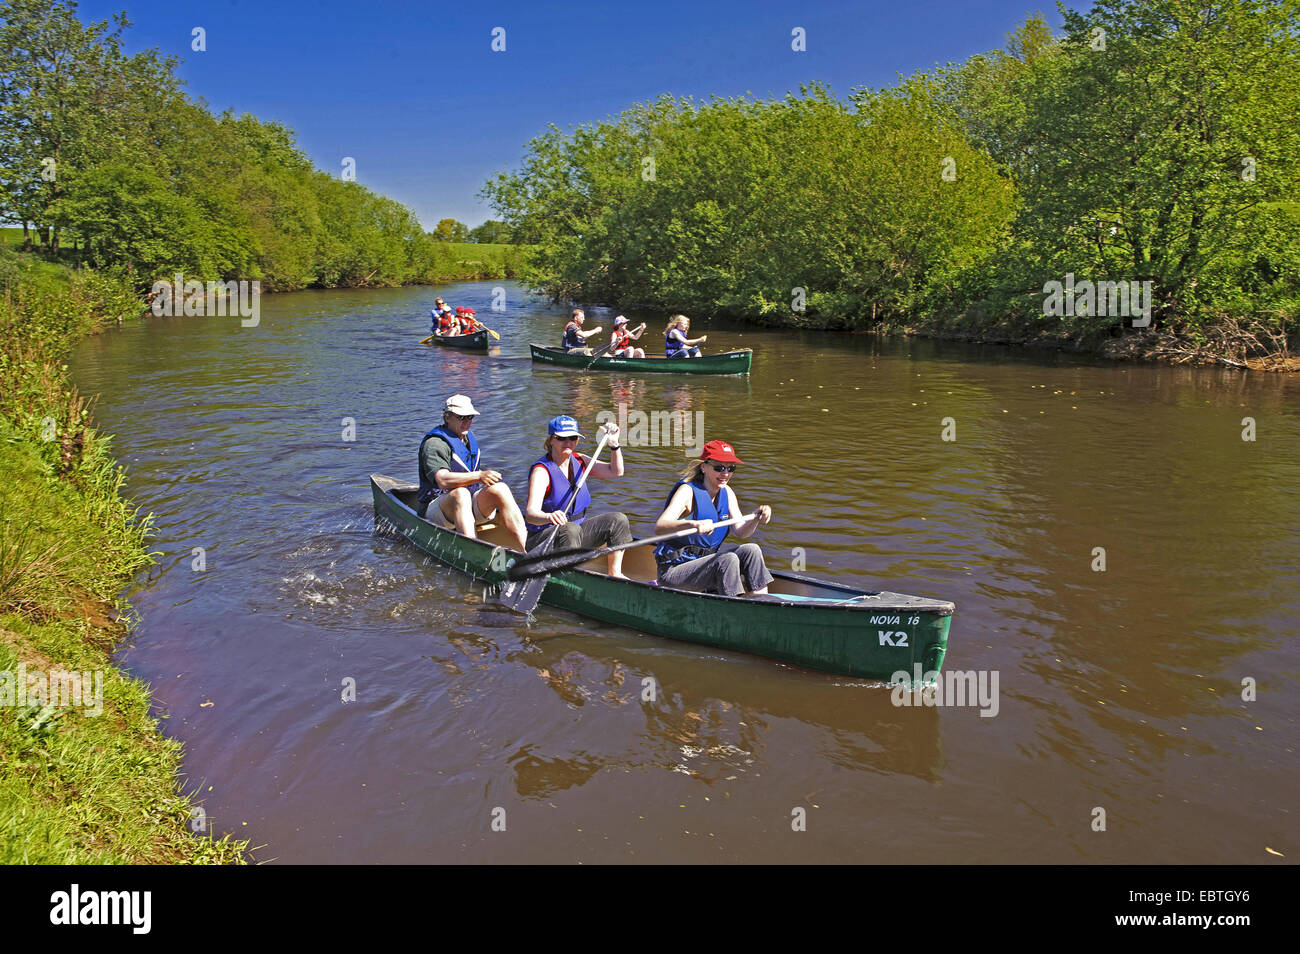 Les canoéistes sur river Hunte, ALLEMAGNE, Basse-Saxe Oldenburger Land Banque D'Images